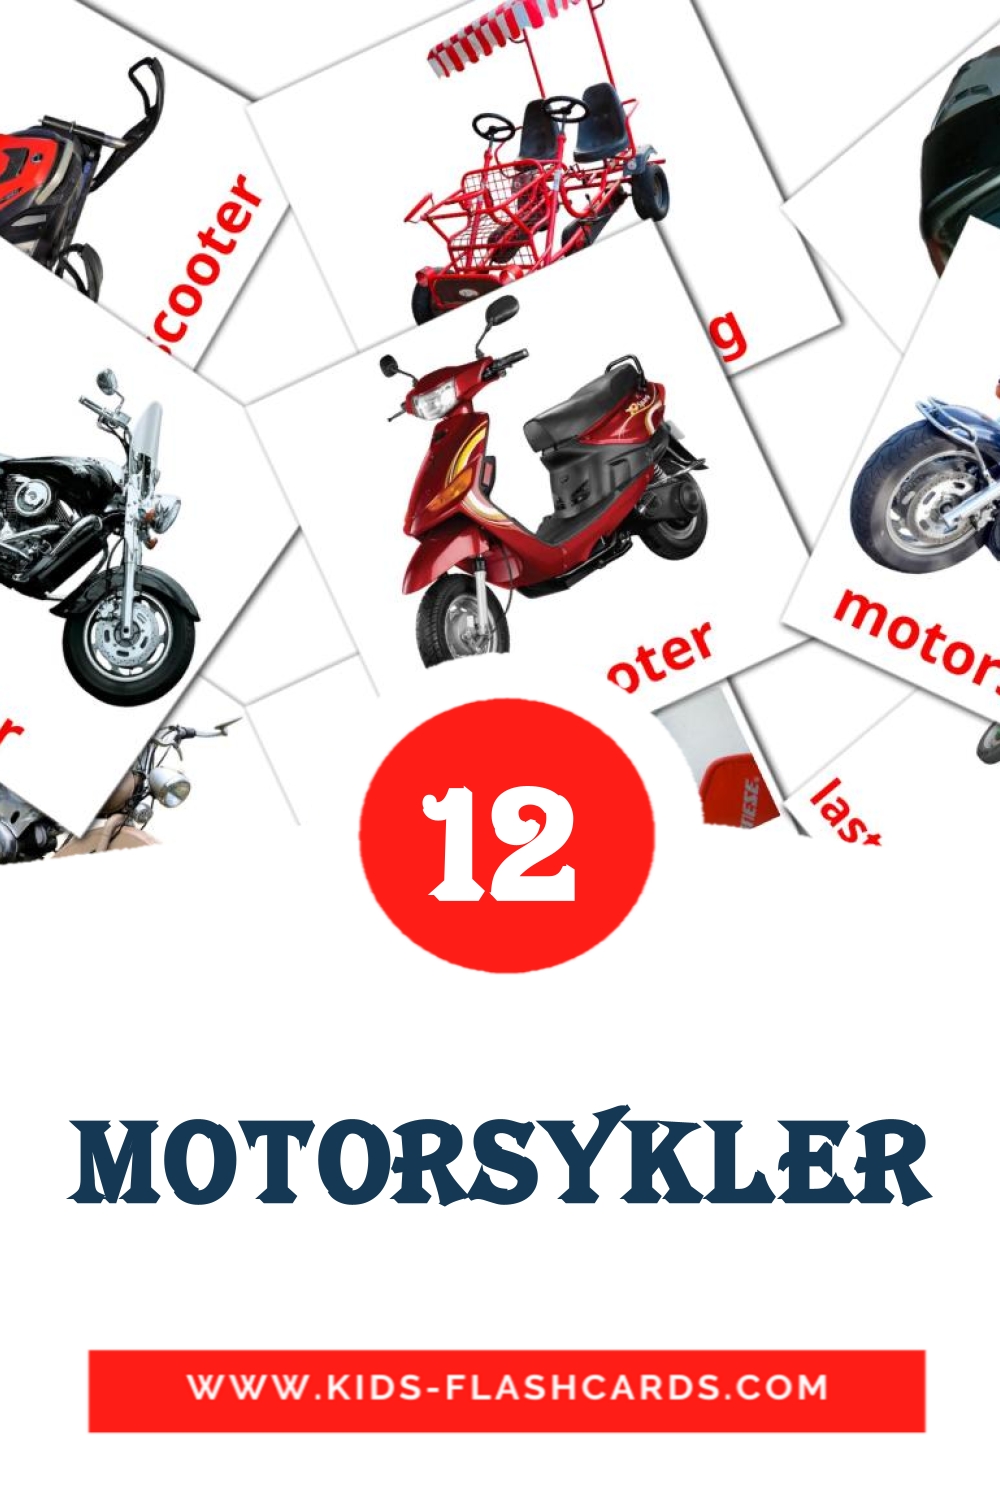 Motorsykler на норвежском для Детского Сада (12 карточек)